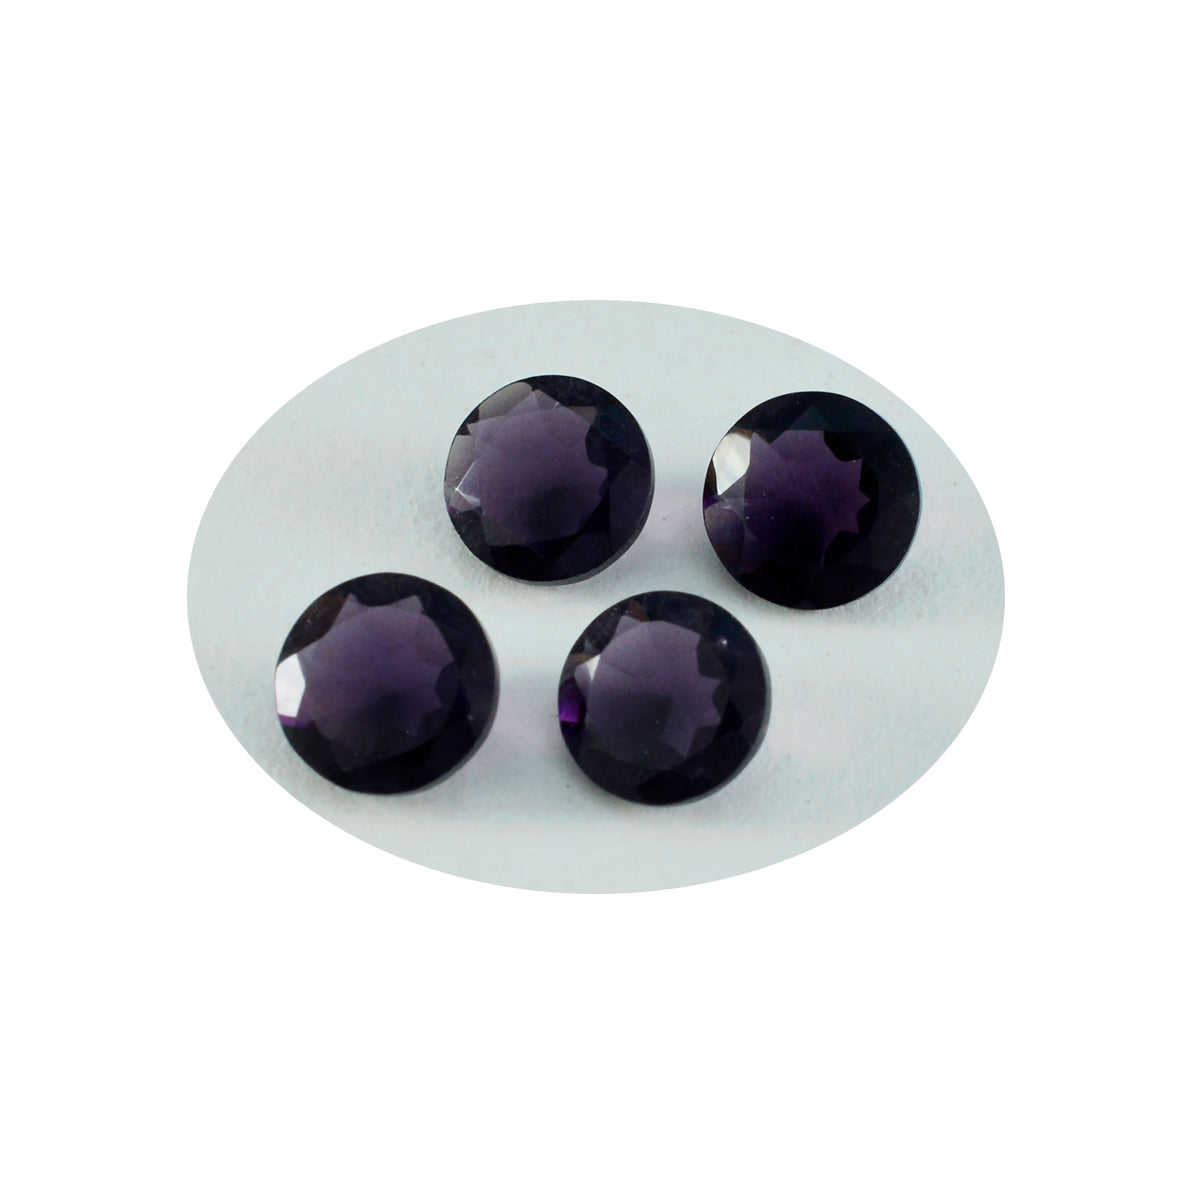 Riyogems 1 pieza de amatista púrpura CZ facetada 15x15mm forma redonda gemas sueltas de gran calidad